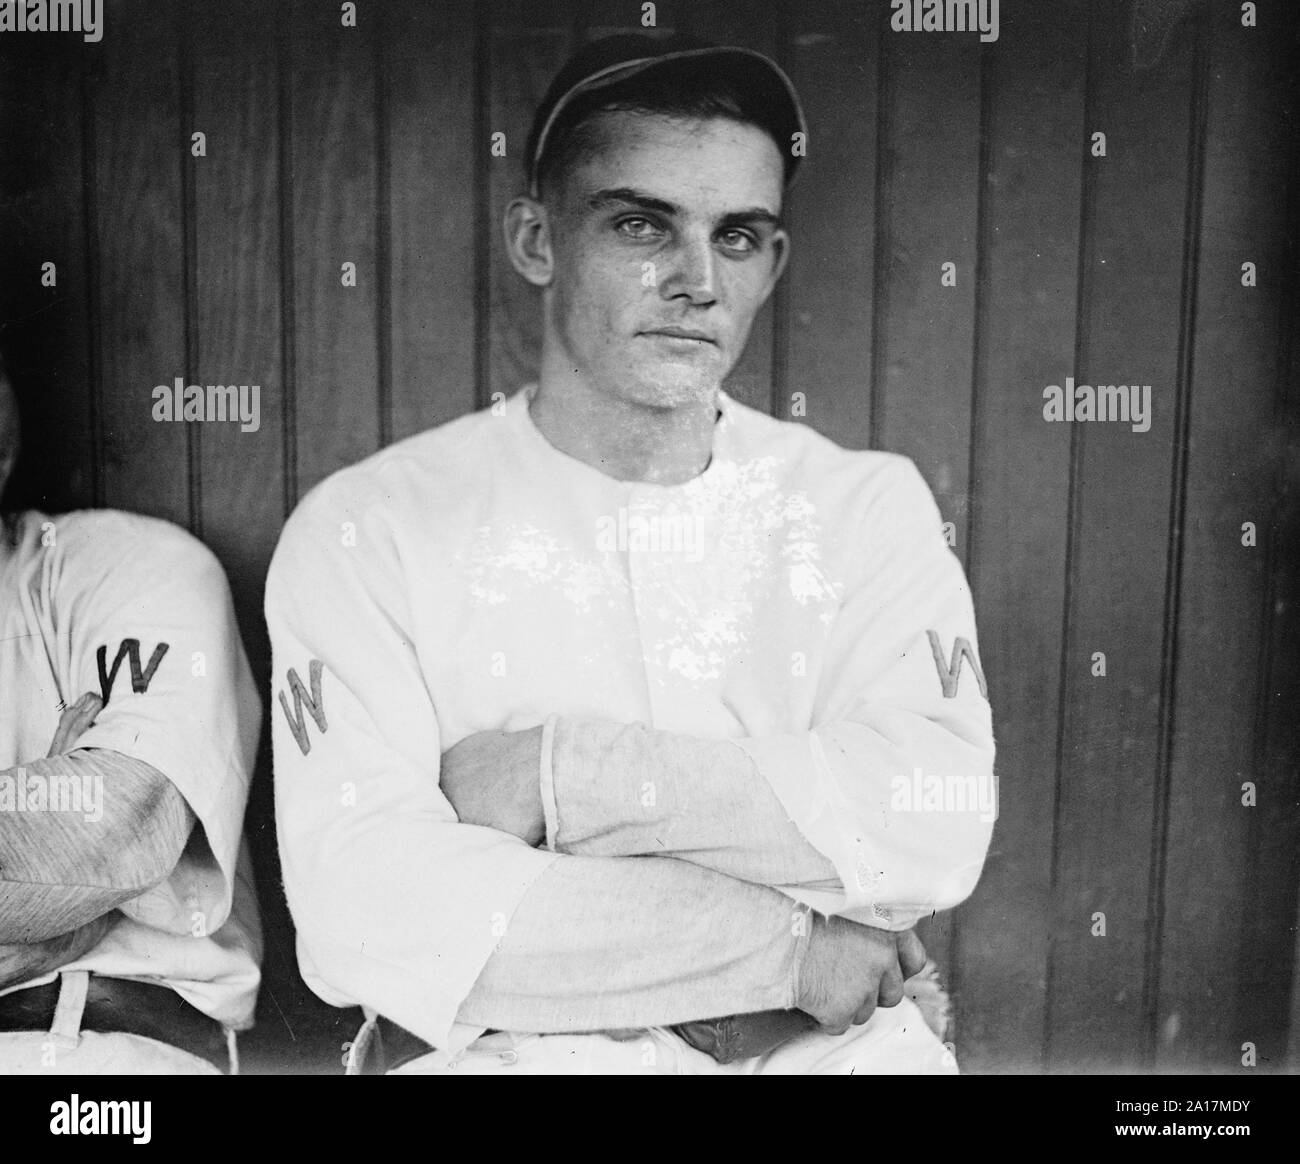 Pulcino Gandil, Charles Arnold "" pulcino Gandil (1888 - 1970) giocatore professionale di baseball, meglio conosciuto come il capofila di tutti gli attori coinvolti nel 1919 Nero lo scandalo di Sox. Foto Stock